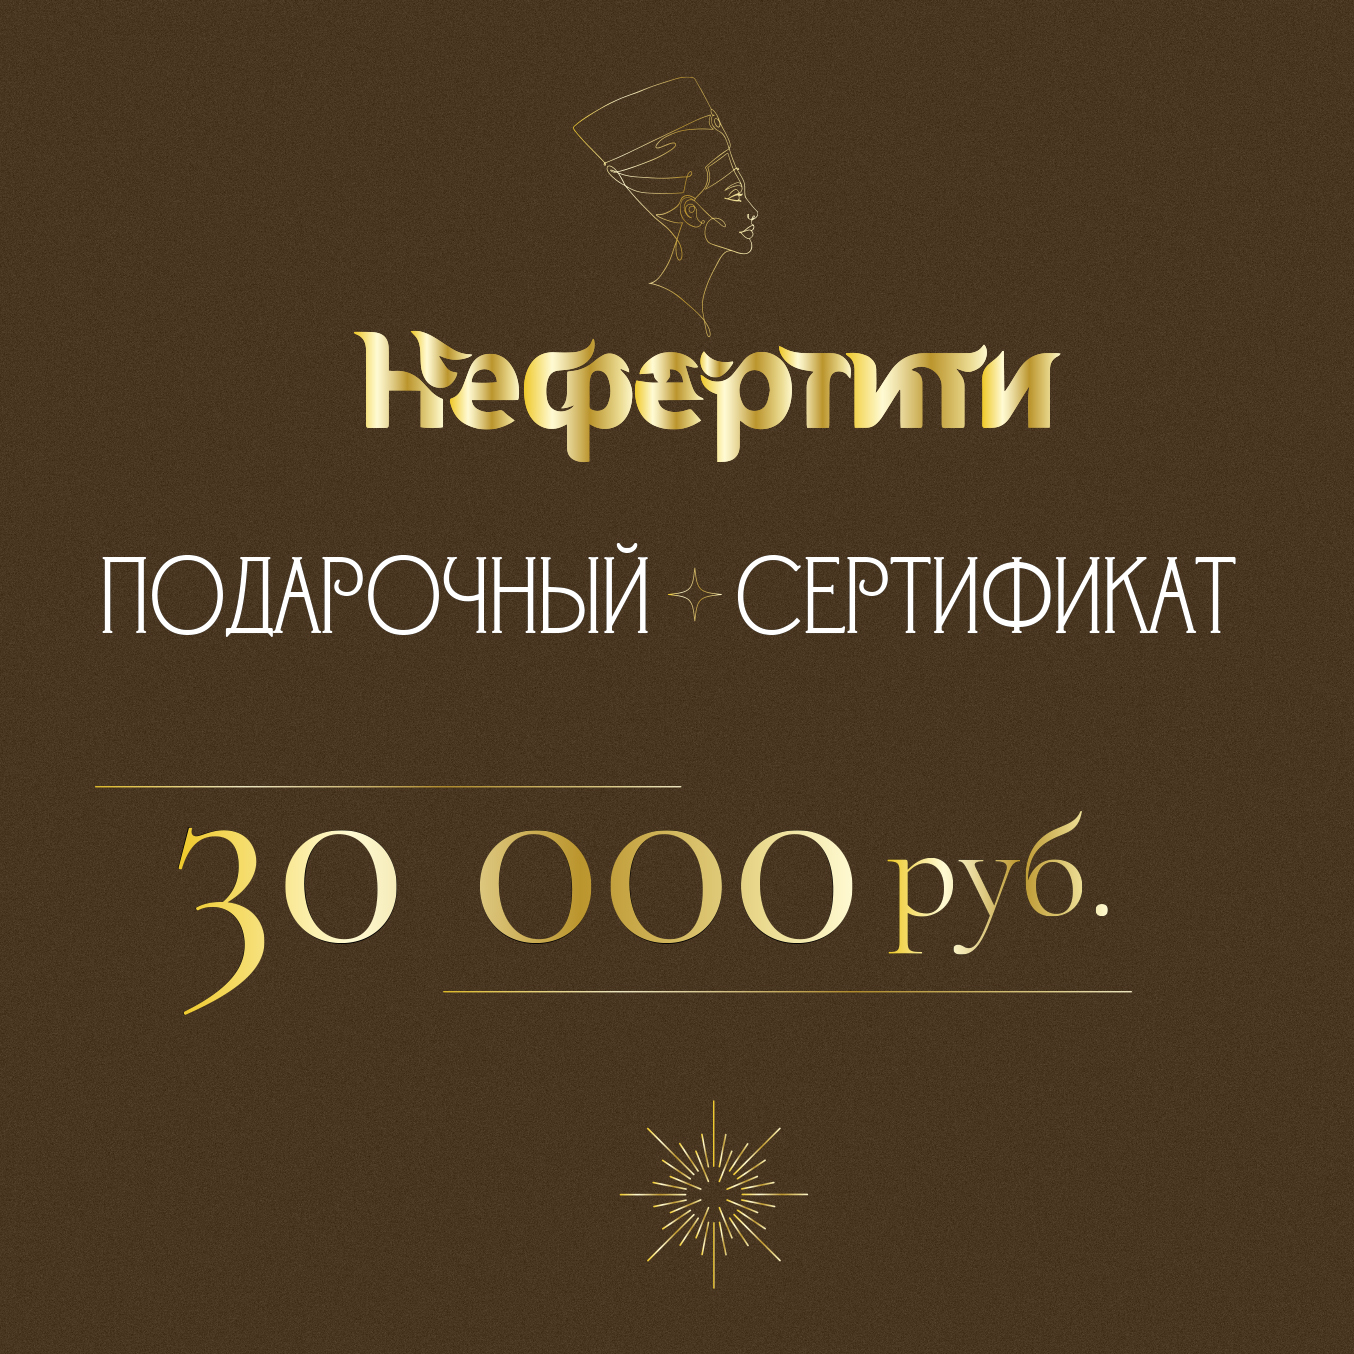 Сертификат Нефертити 30000р